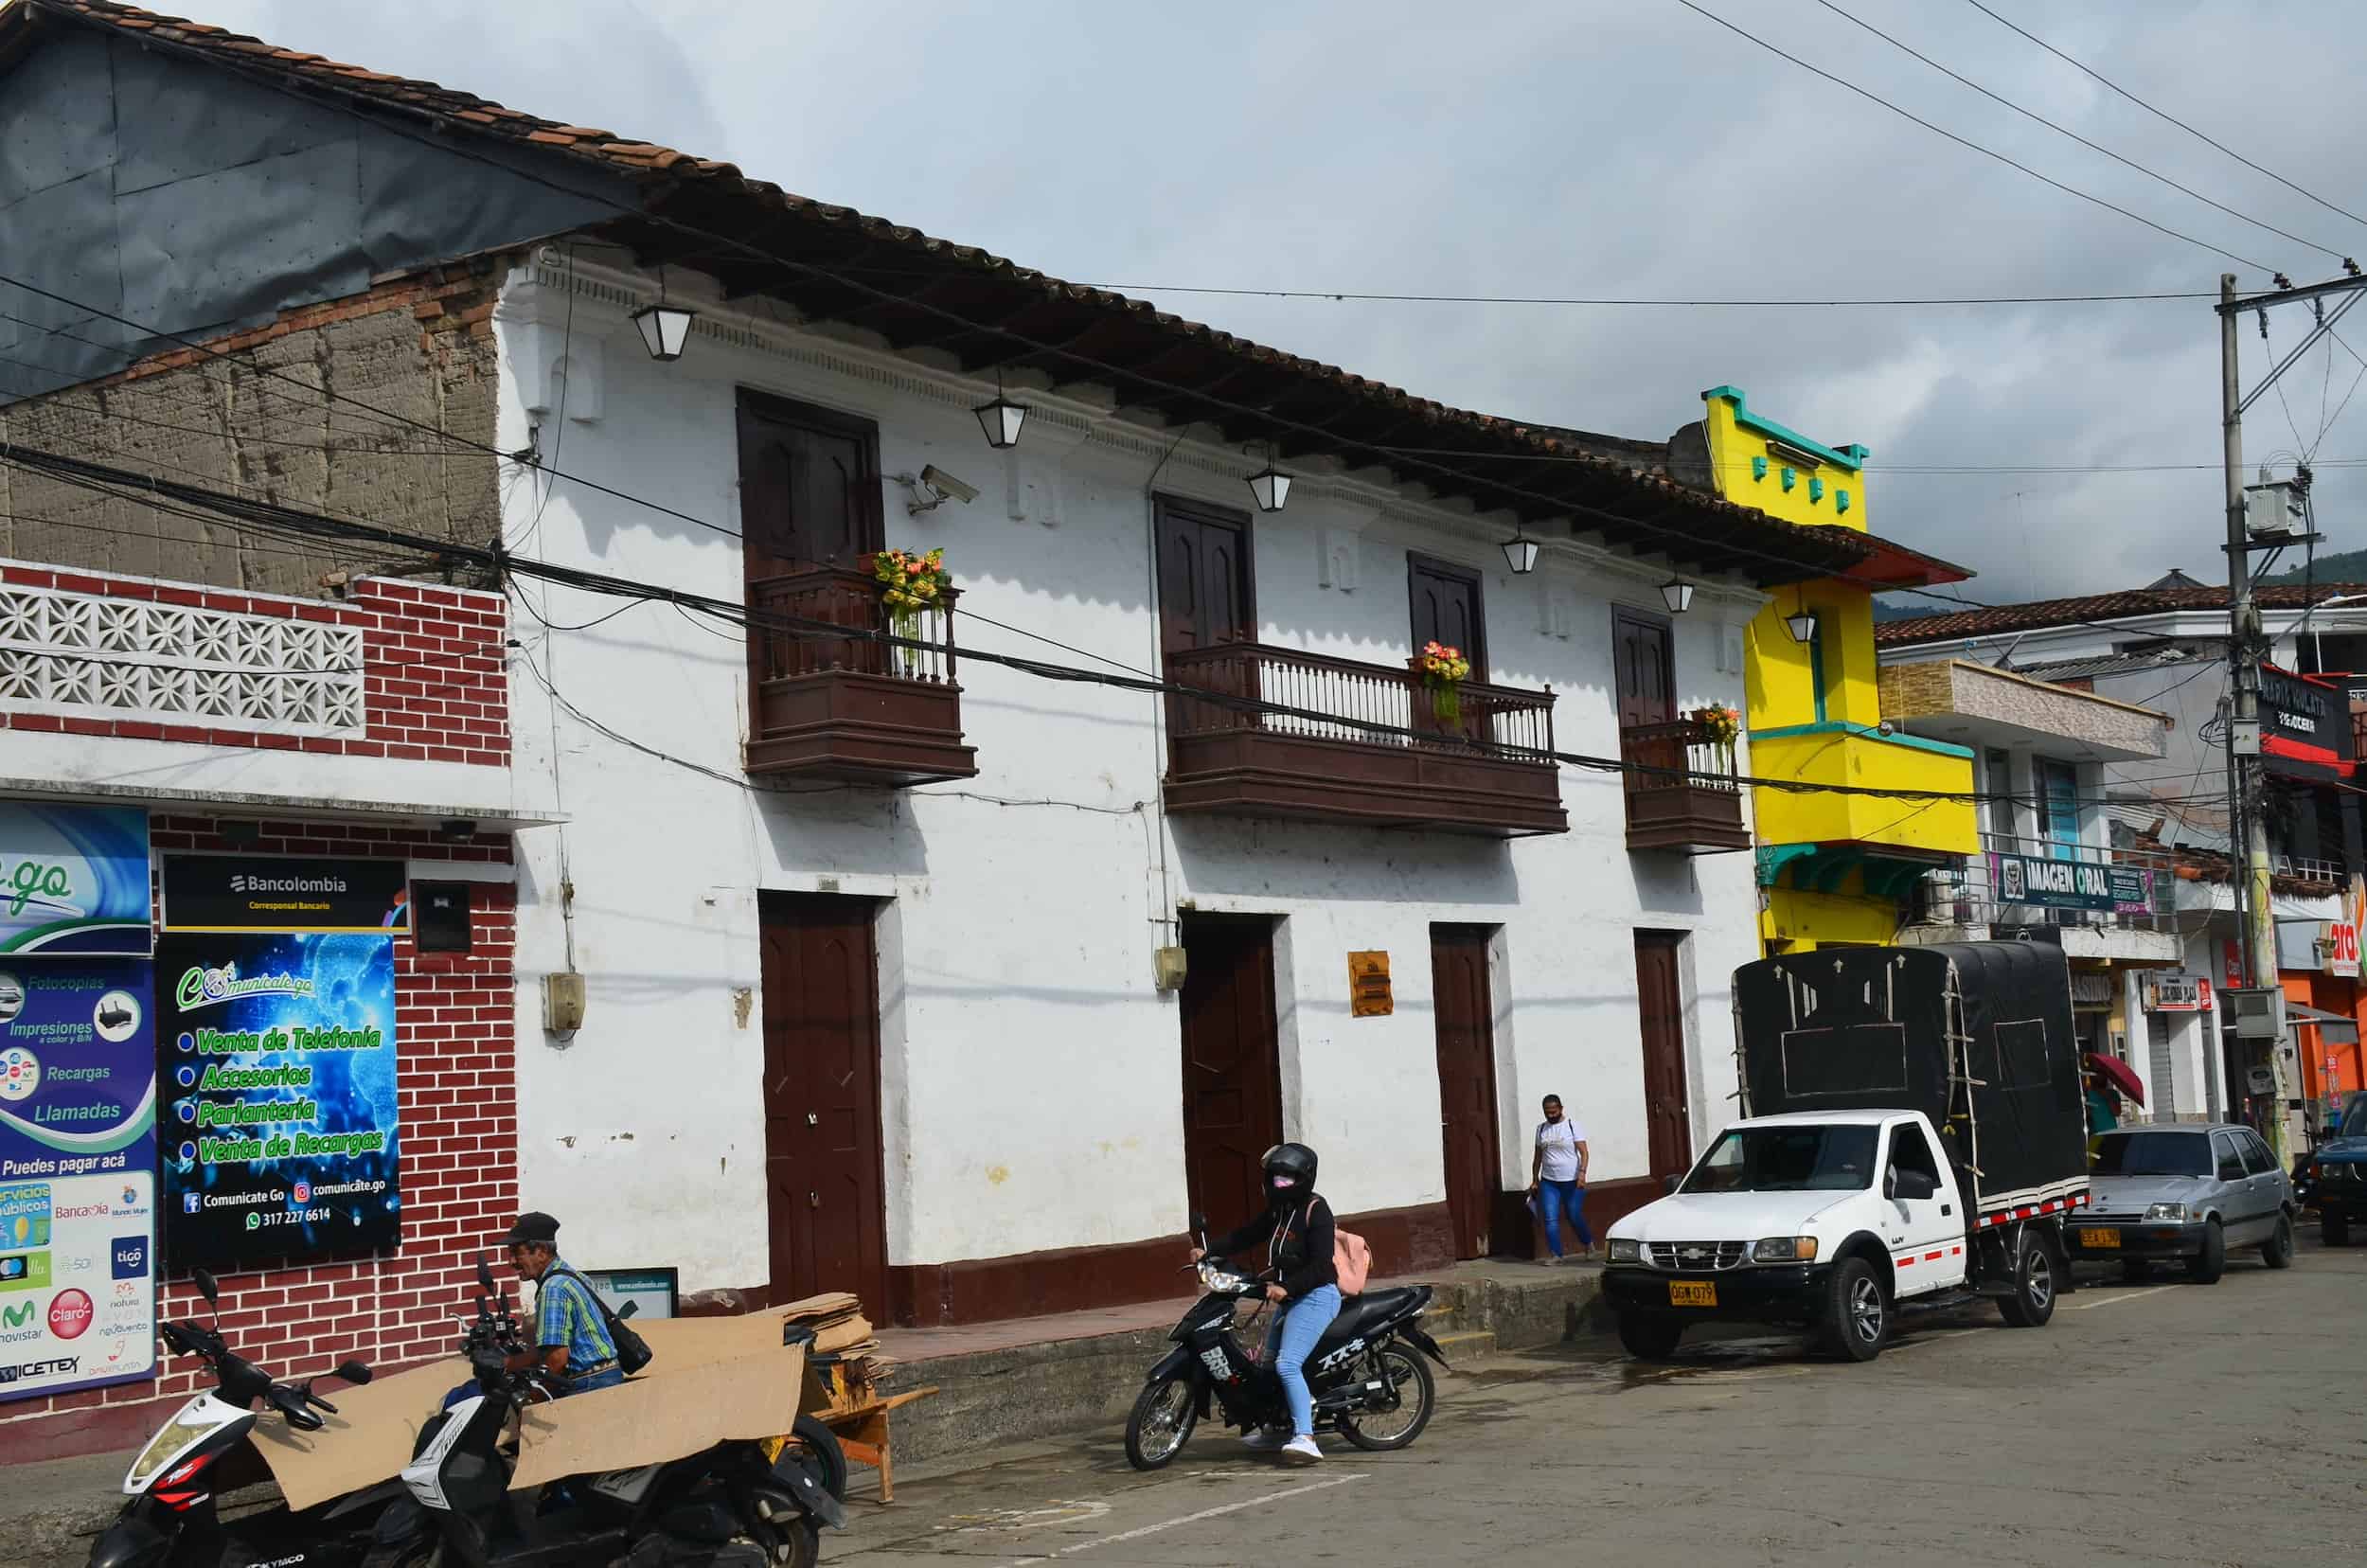 Town Hall in La Unión, Valle del Cauca, Colombia